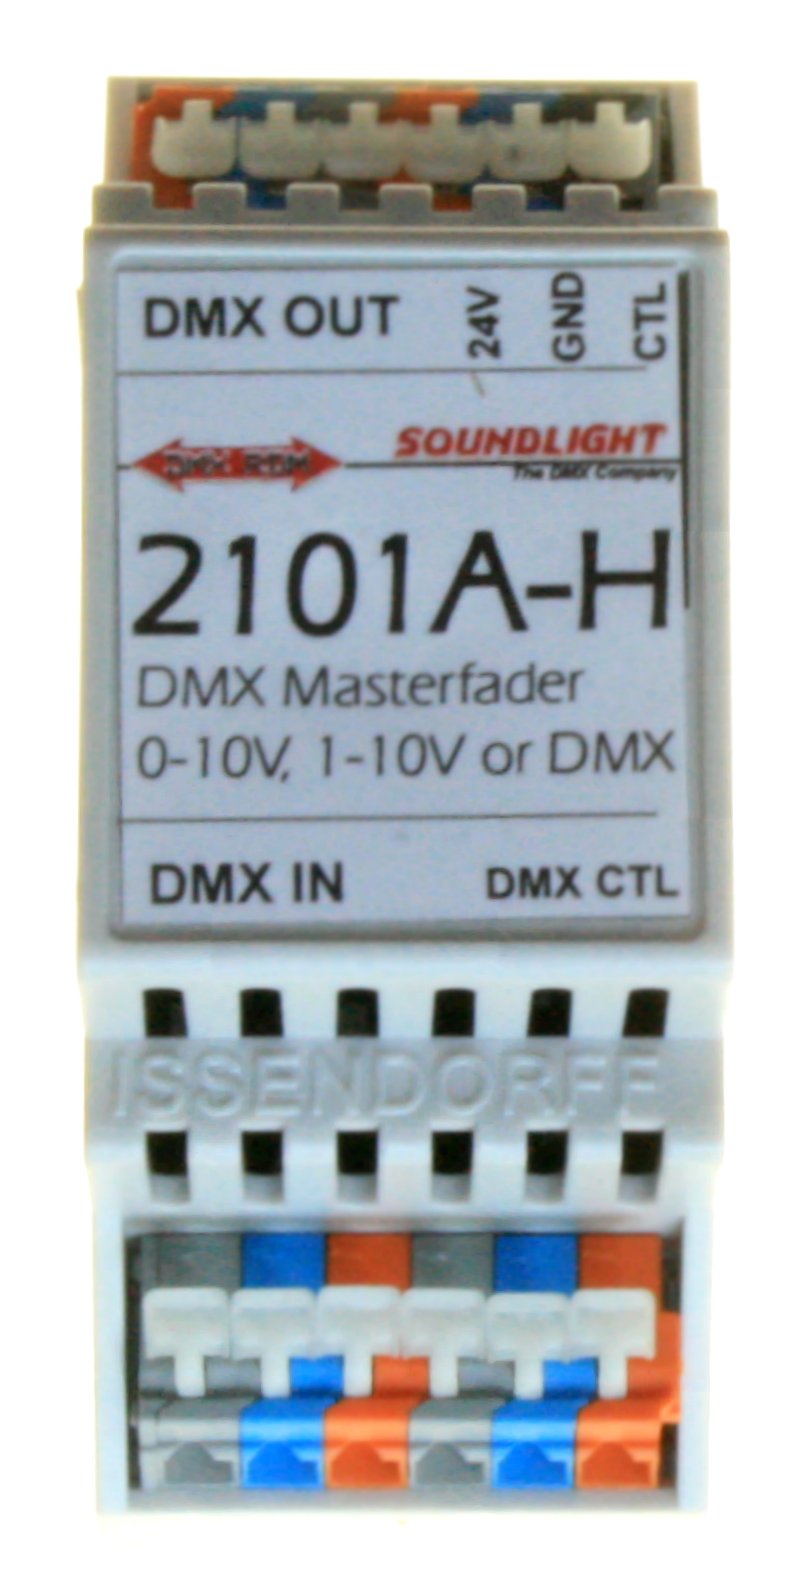 [DMX Merger 2101A-H]